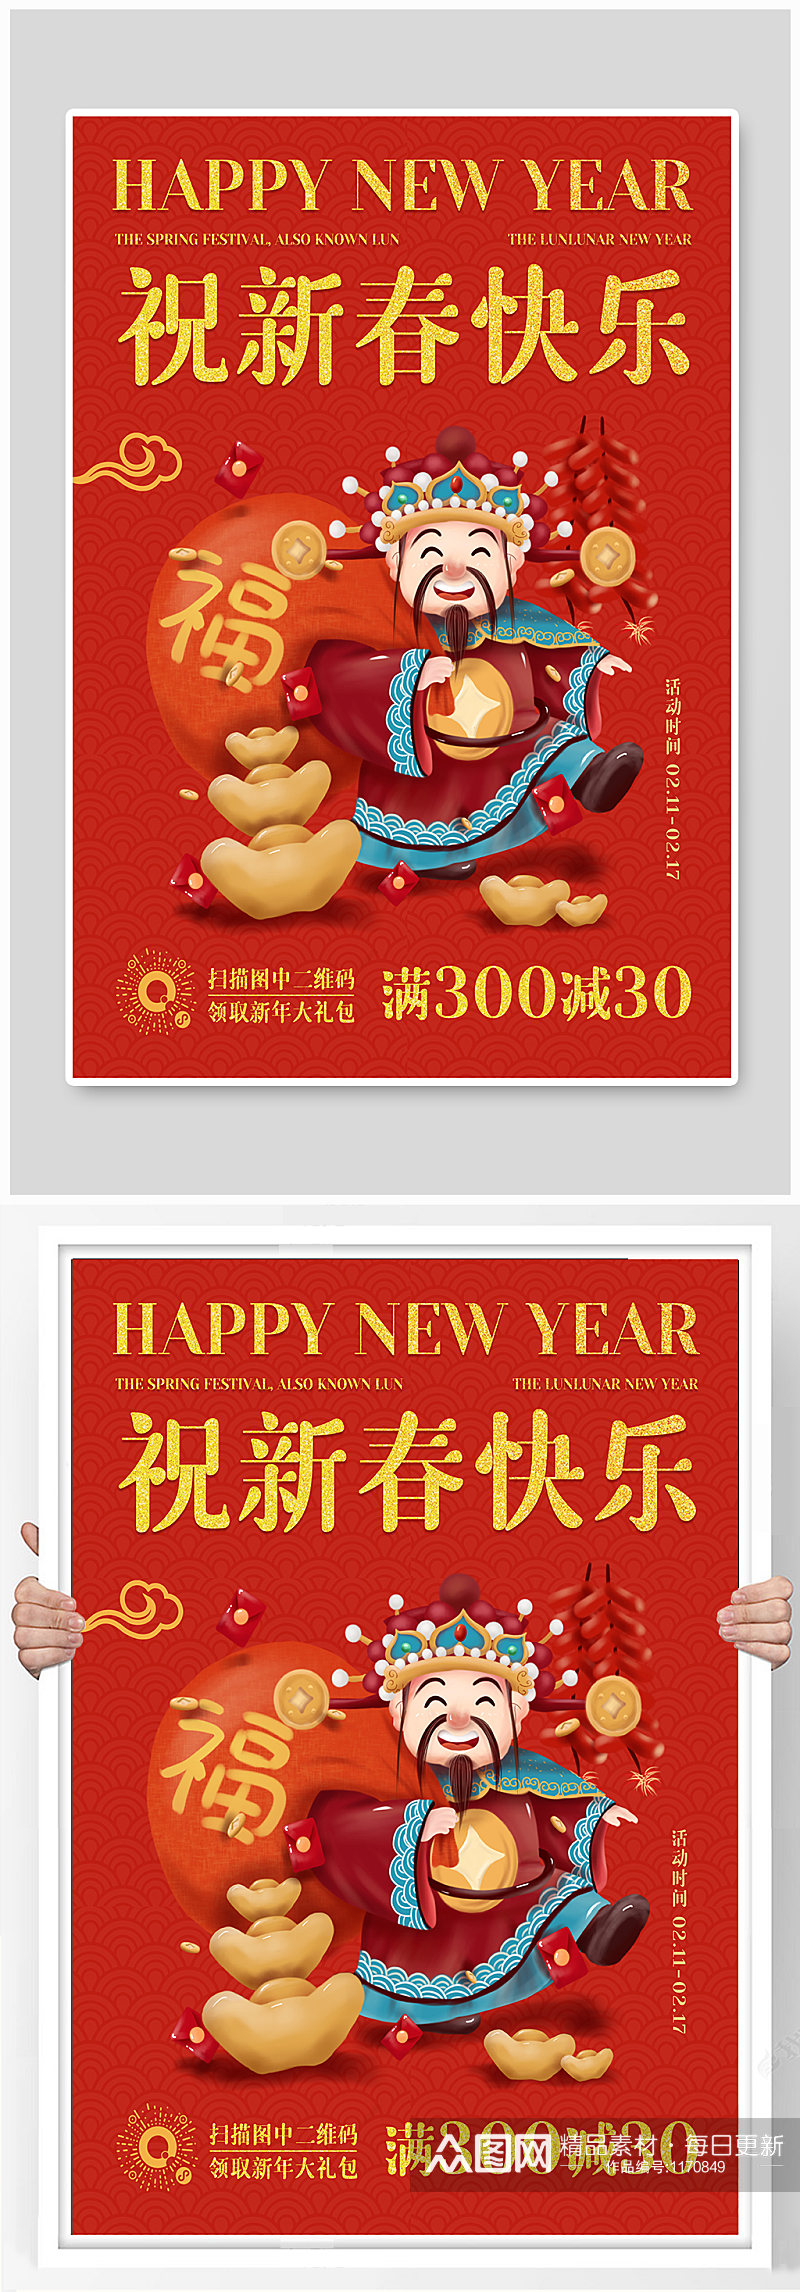 牛年红色喜庆电商祝福新年快乐海报素材